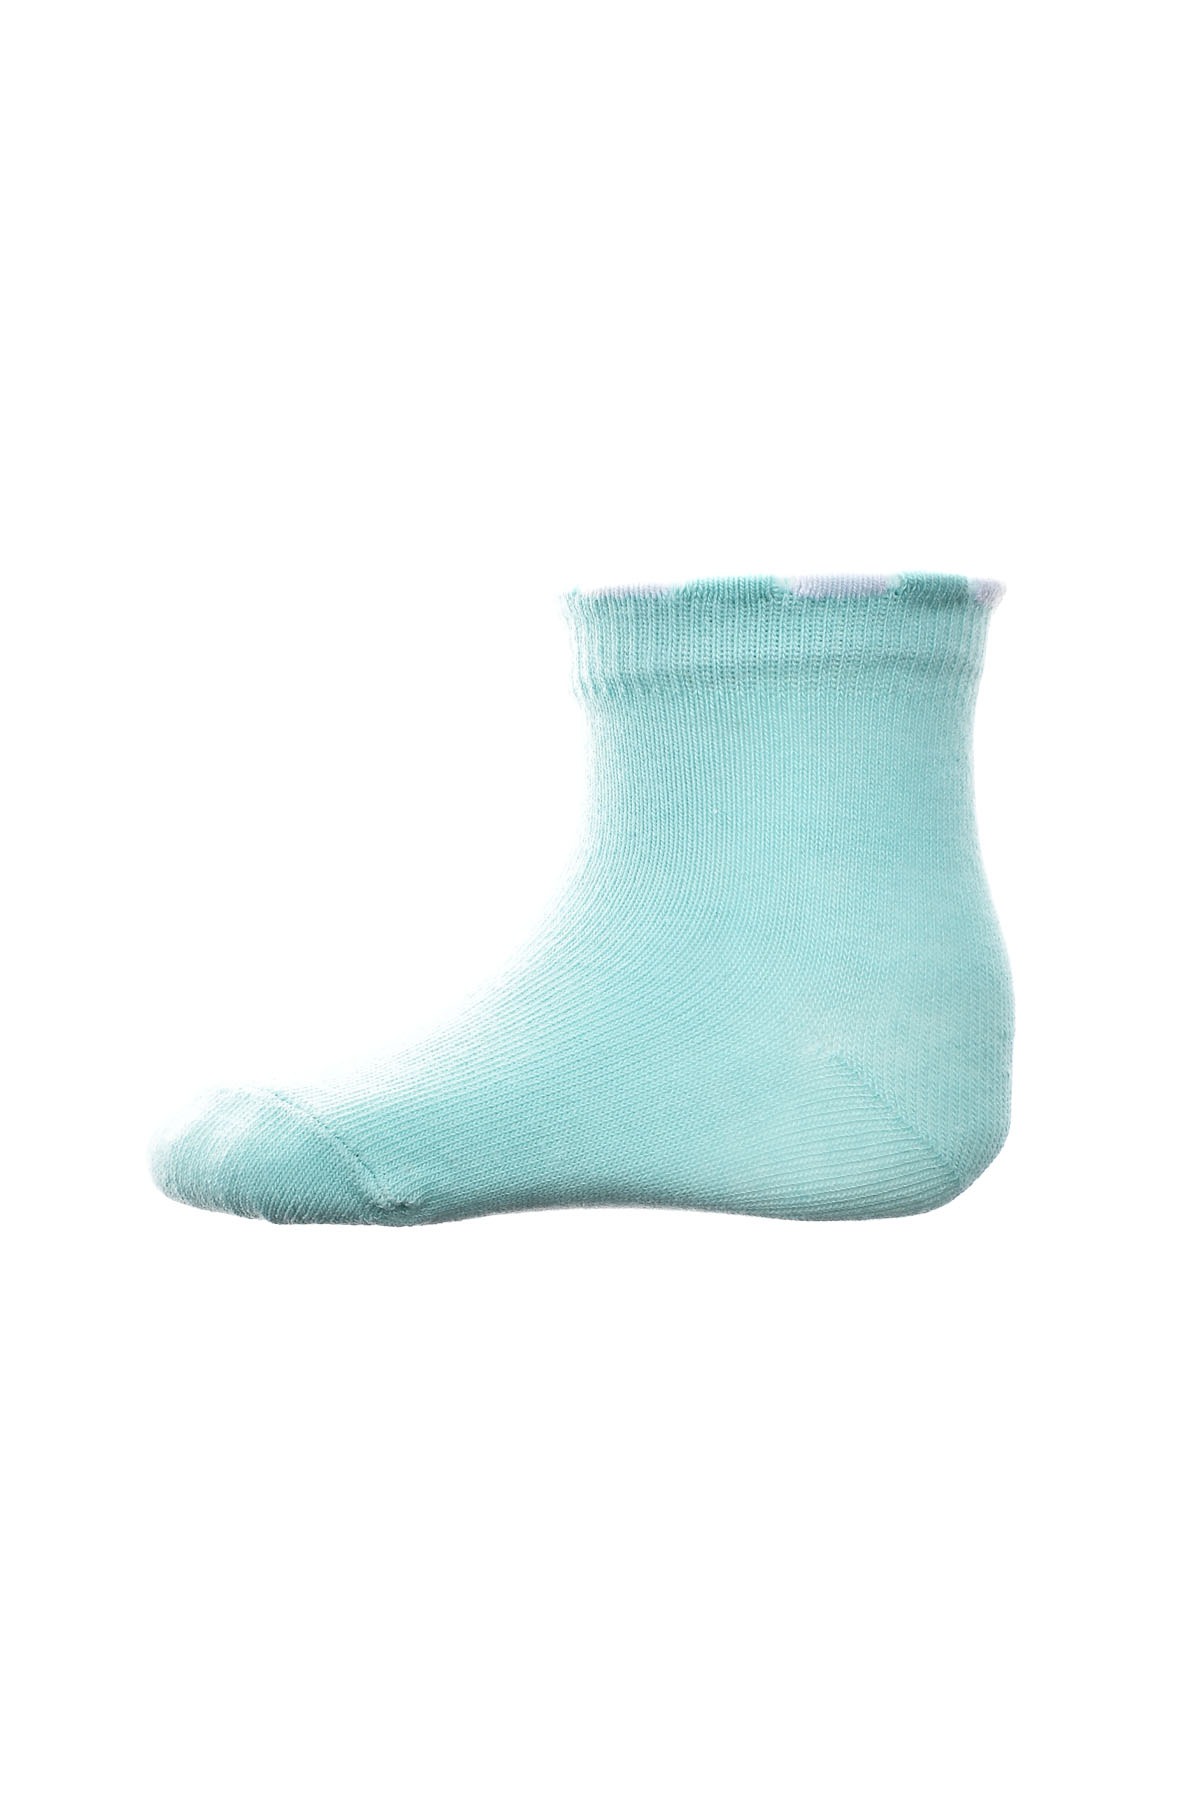 Baby socks - BebeLino - 0